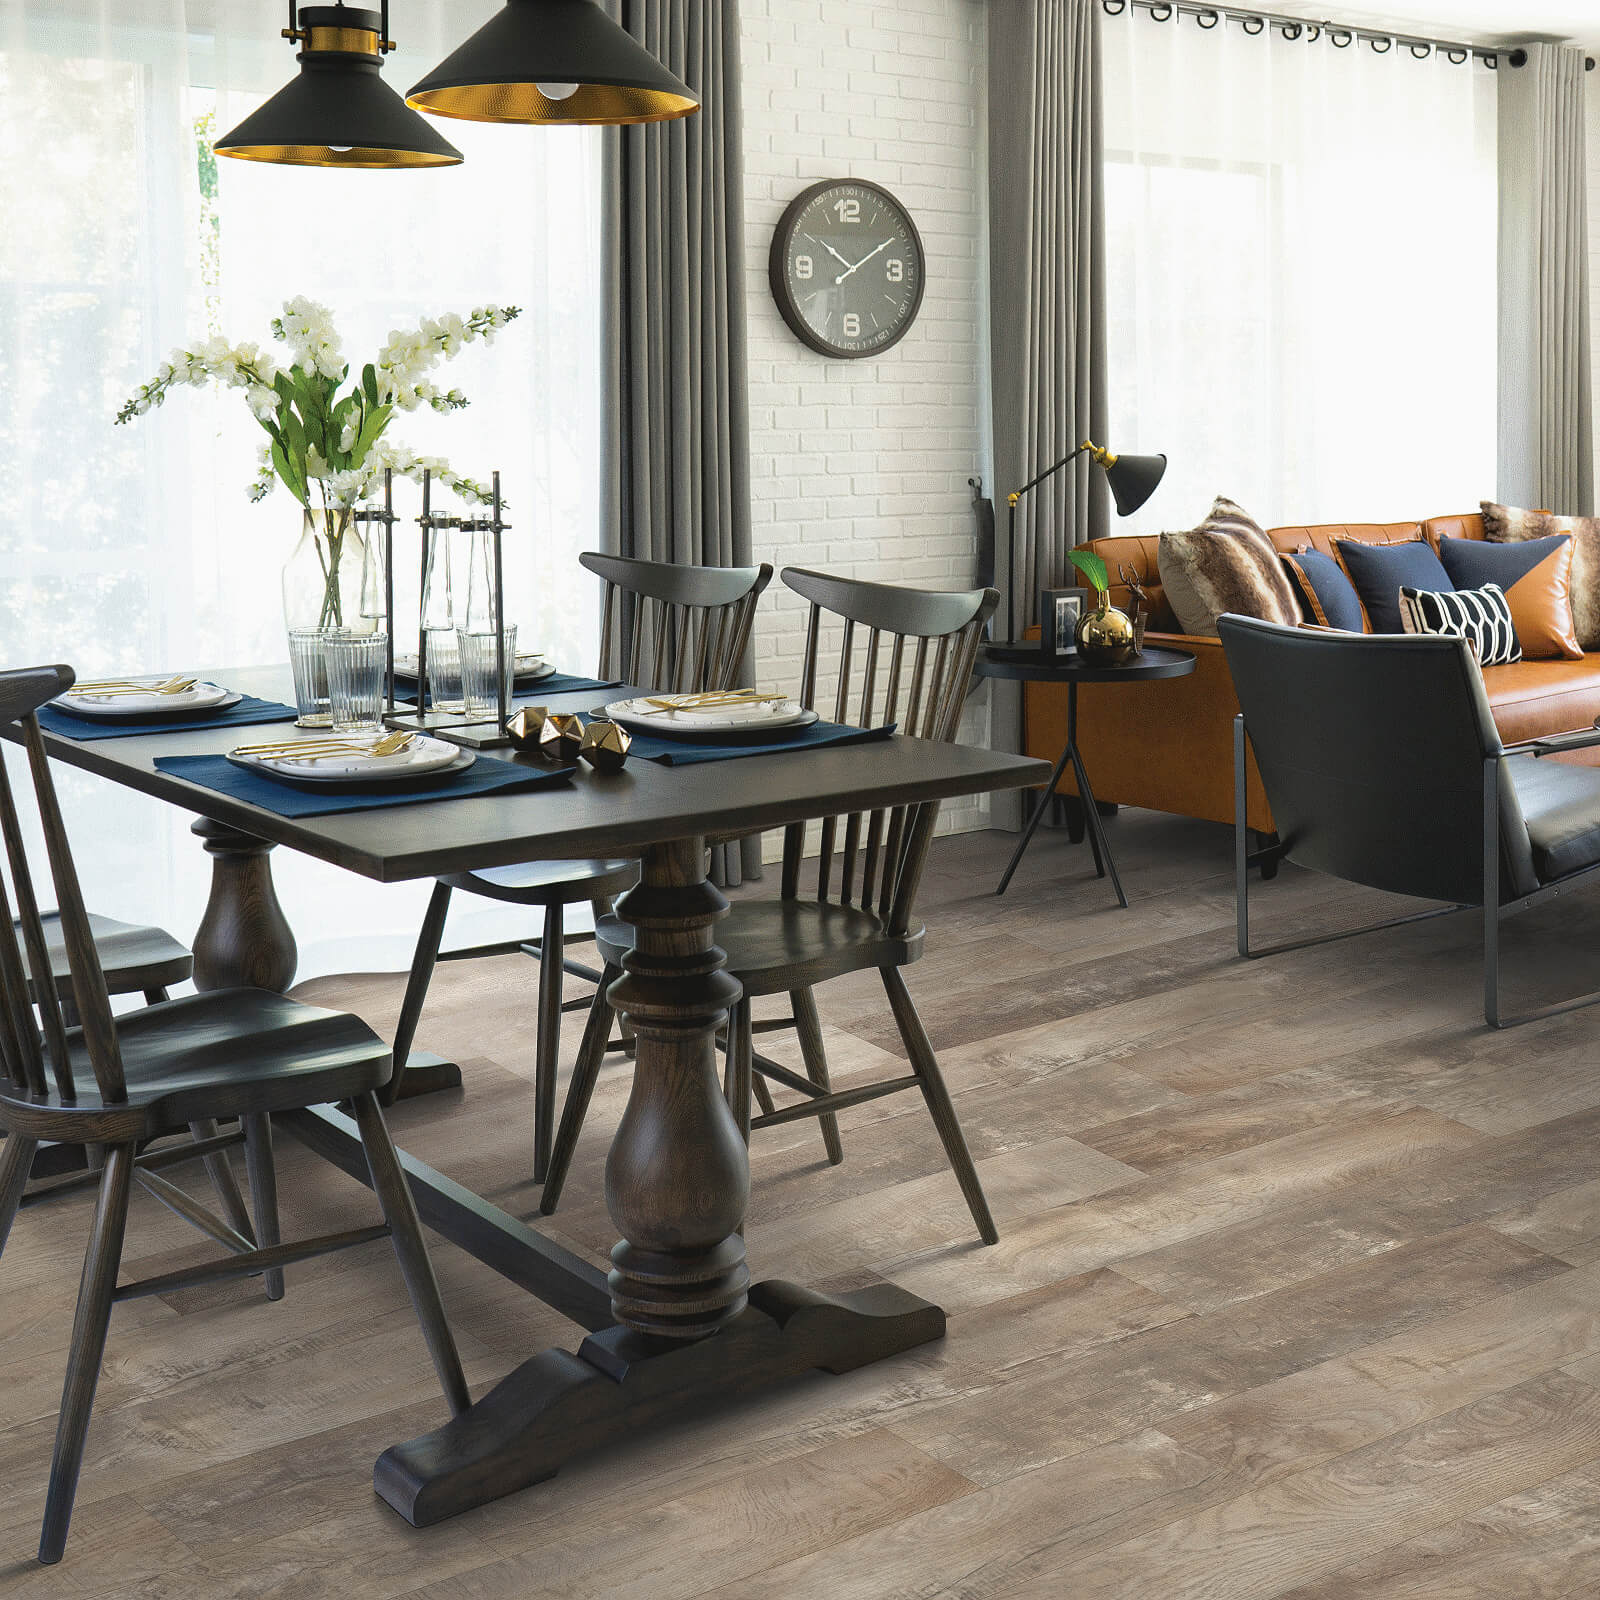 Waterproof flooring in dining room | Sterling Carpet and Flooring